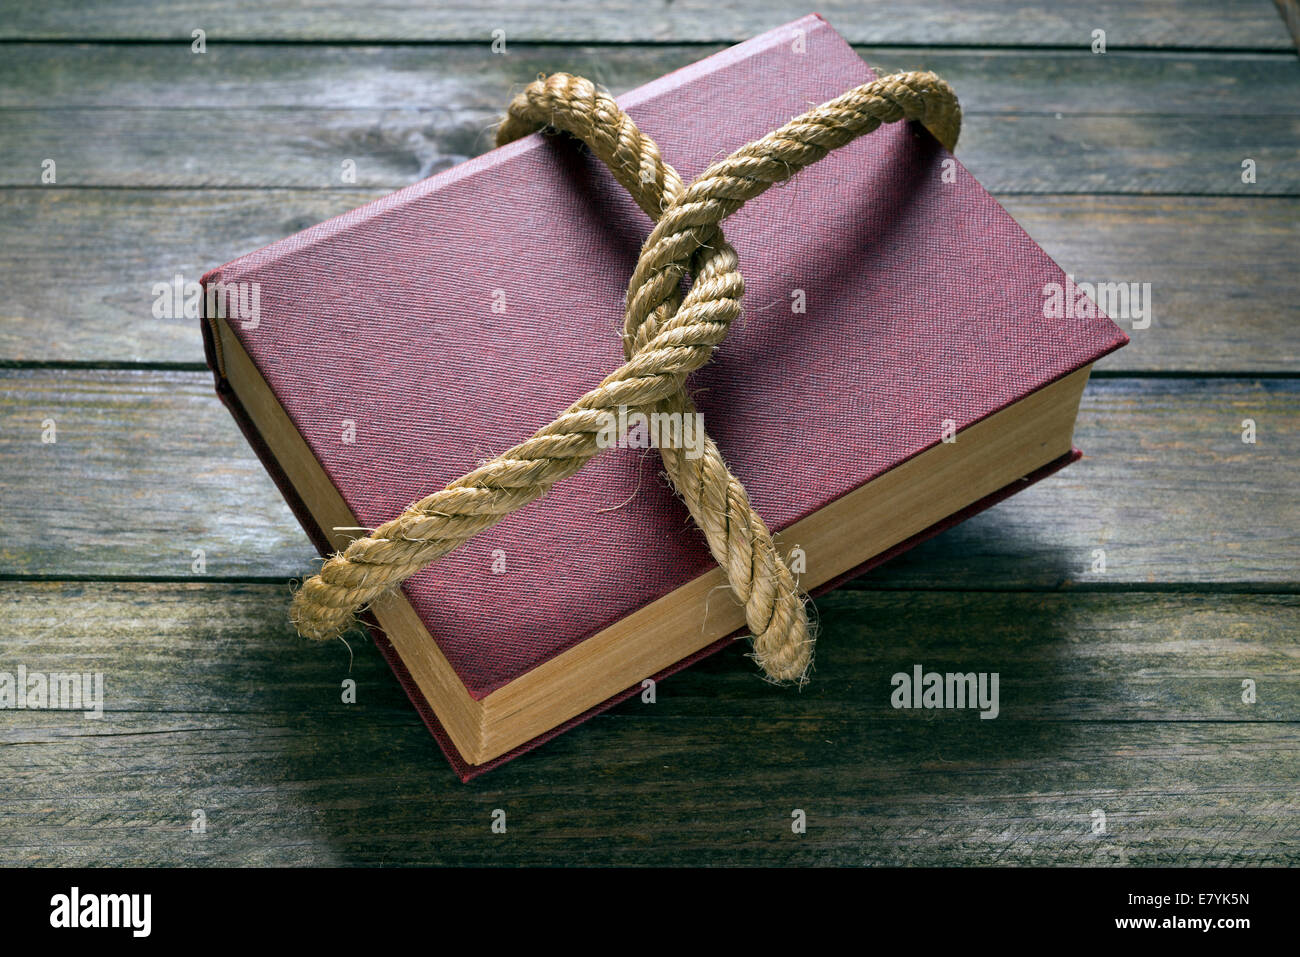 Vieux livre attachés avec une corde épaisse sur une table en bois Banque D'Images